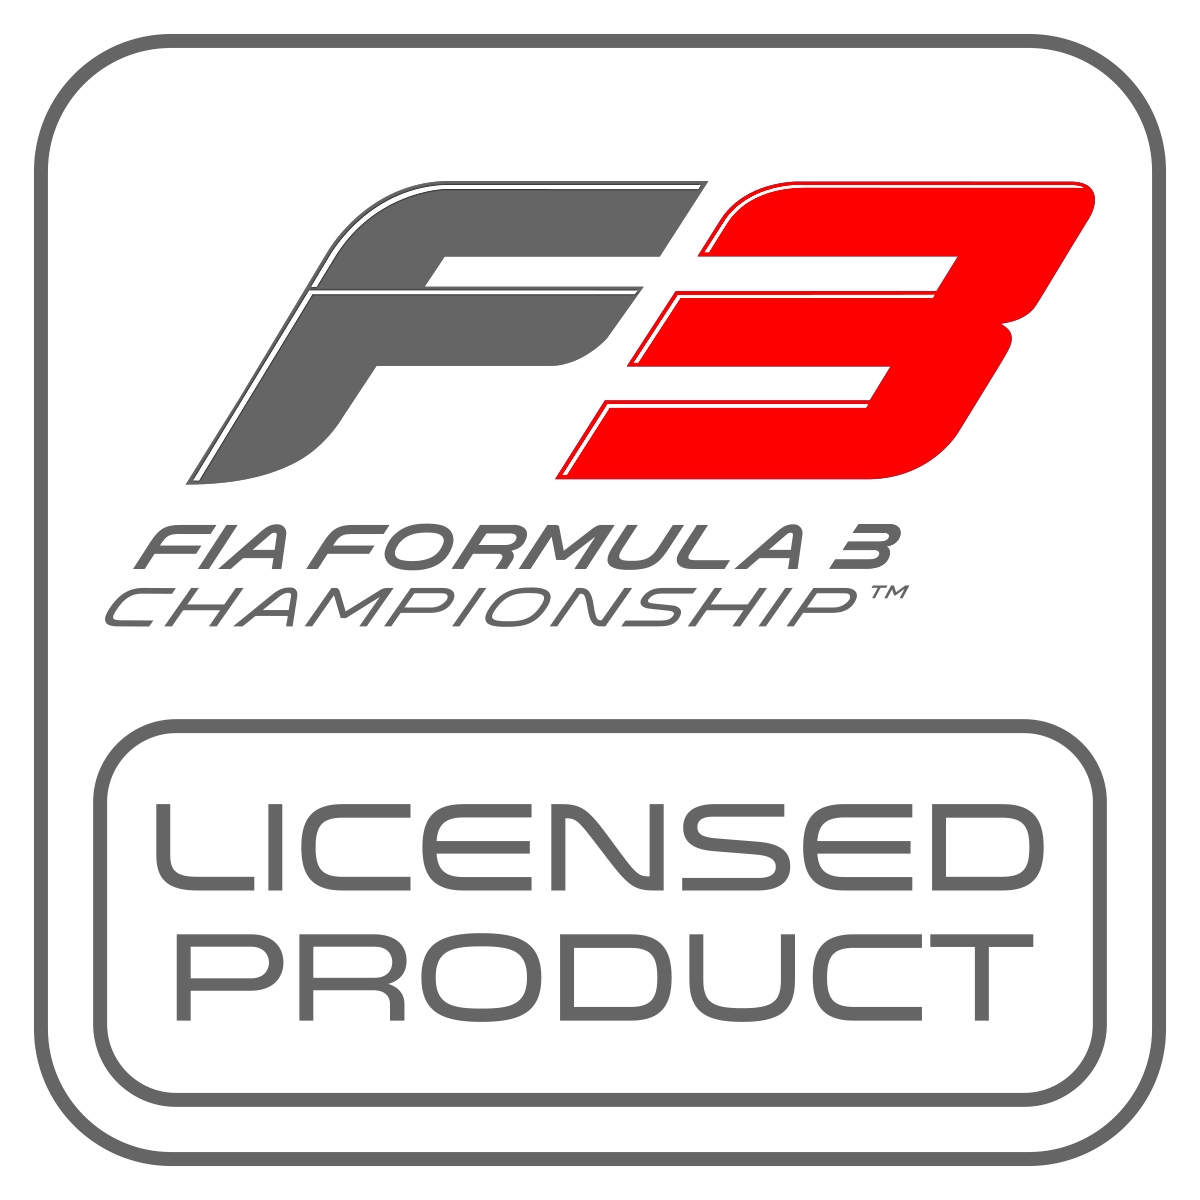 Logo de producto con licencia de F3